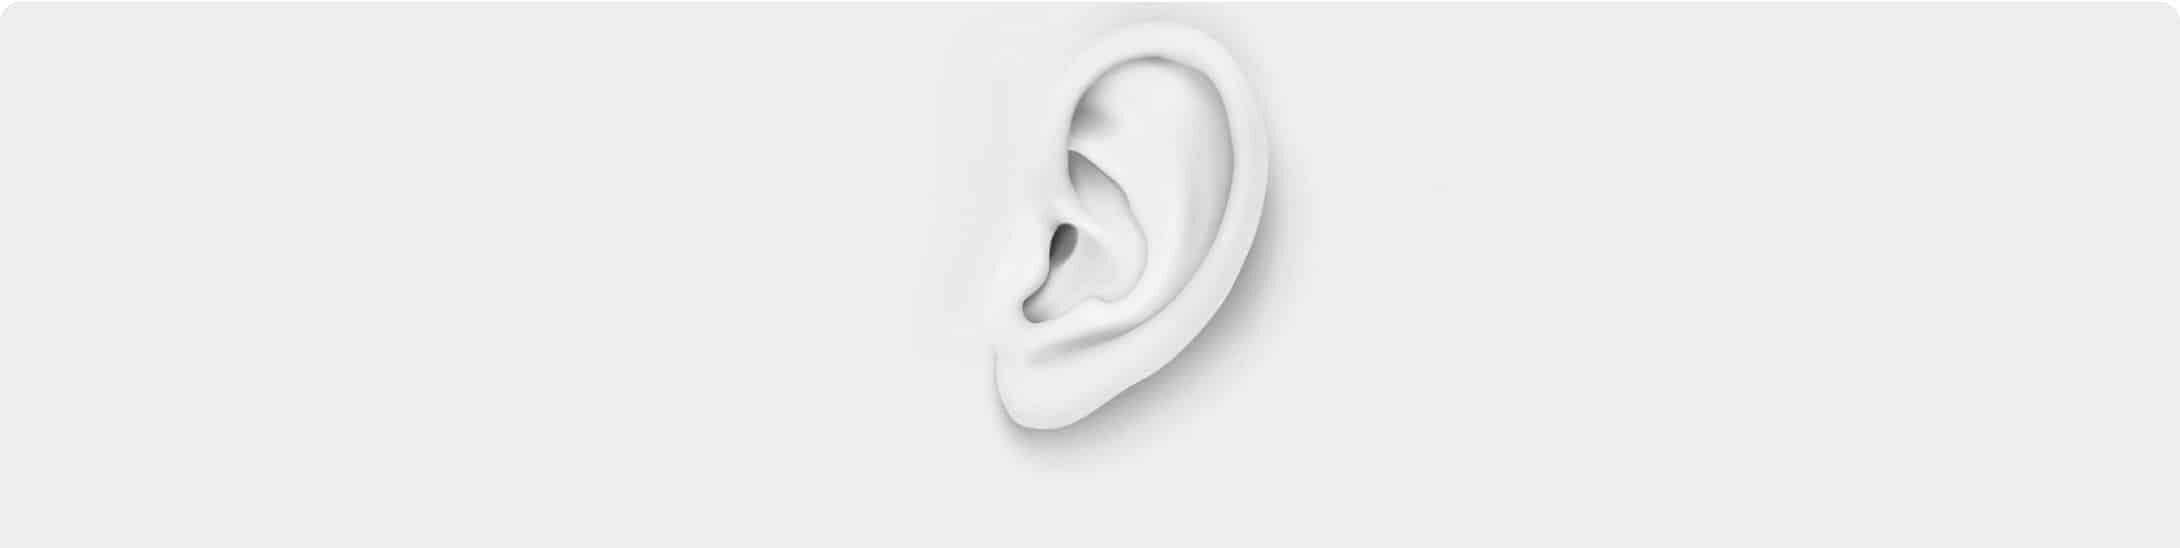 Wit oor gehoorverlies